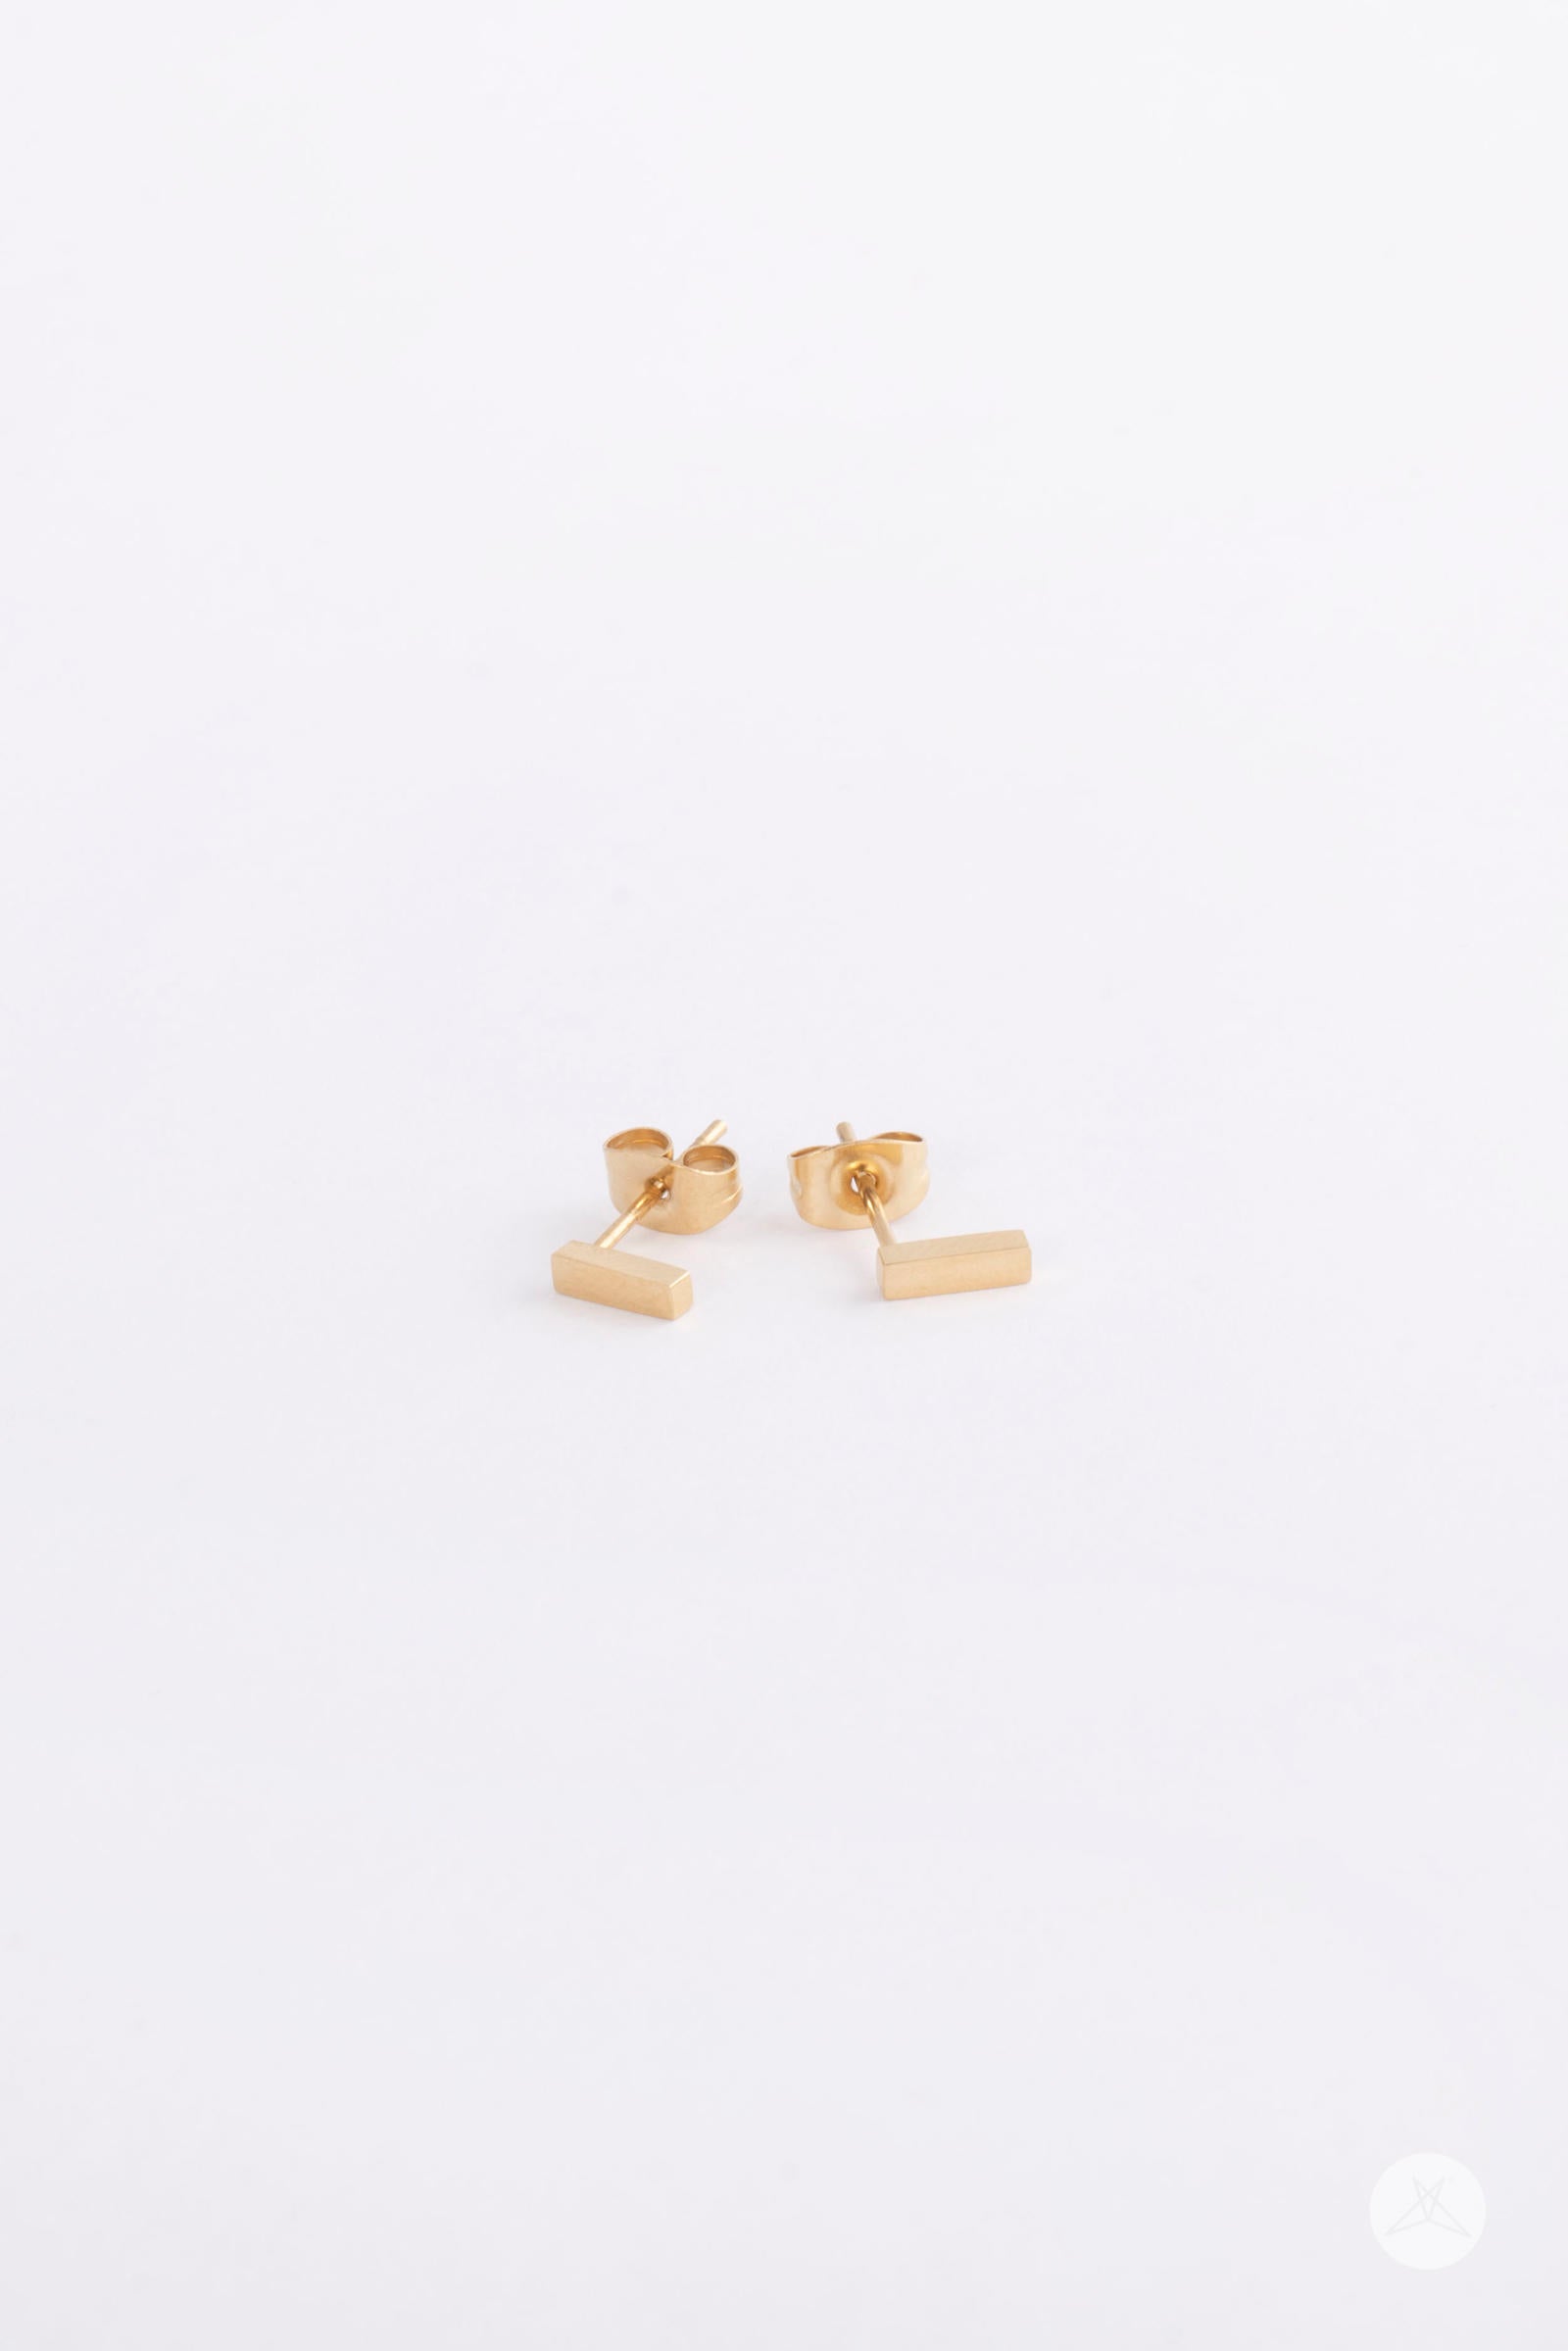 Modern Gold Bar Earrings